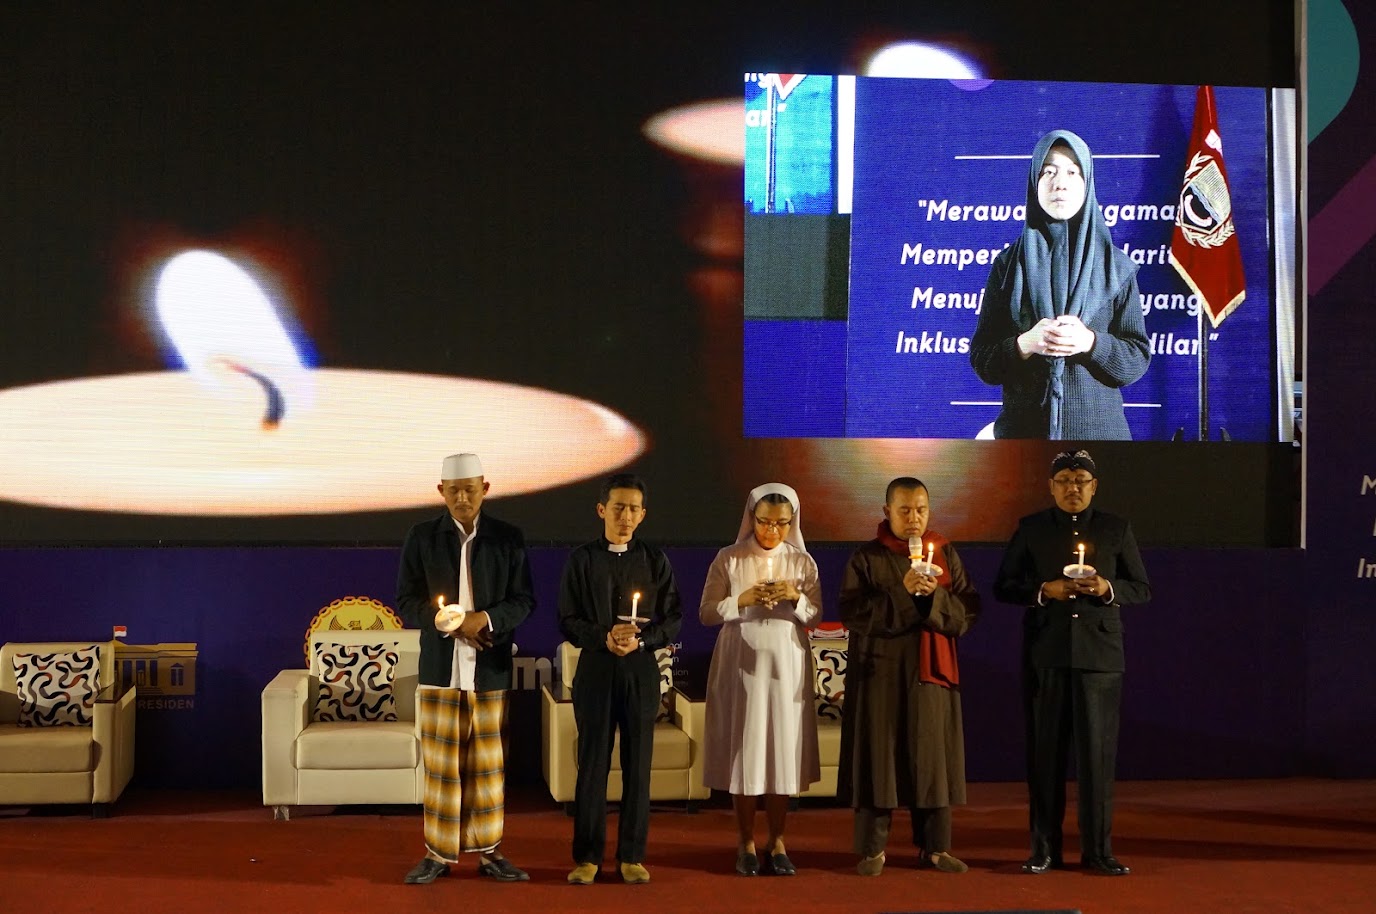 Faith leaders hold interfaith prayer on Human Rights Day